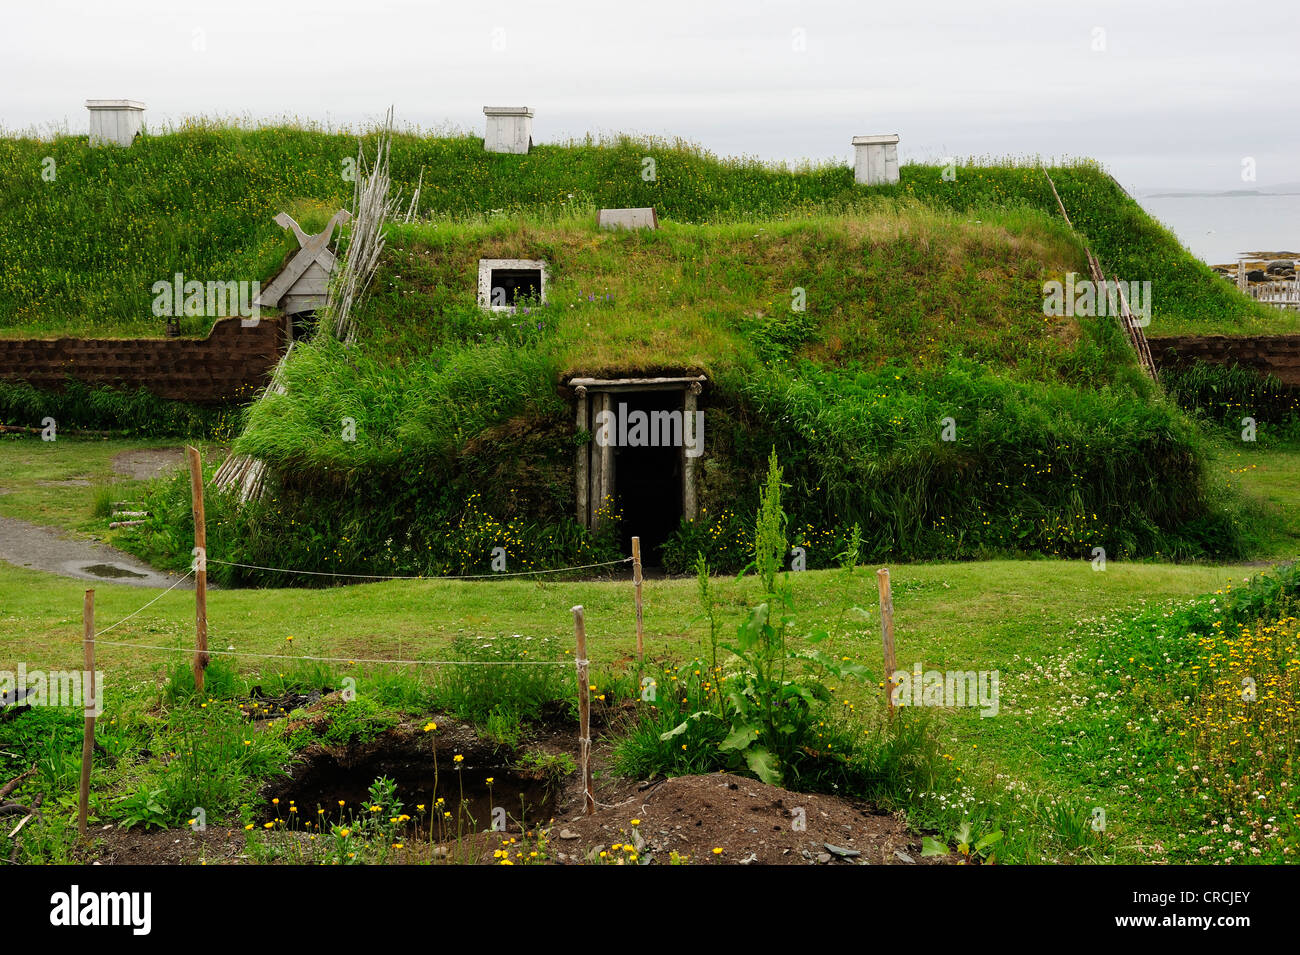 Primer asentamiento vikingo en el continente americano, alrededor de 1000 años, L'Anse aux Meadows, Terranova, Canadá, Norteamérica Foto de stock